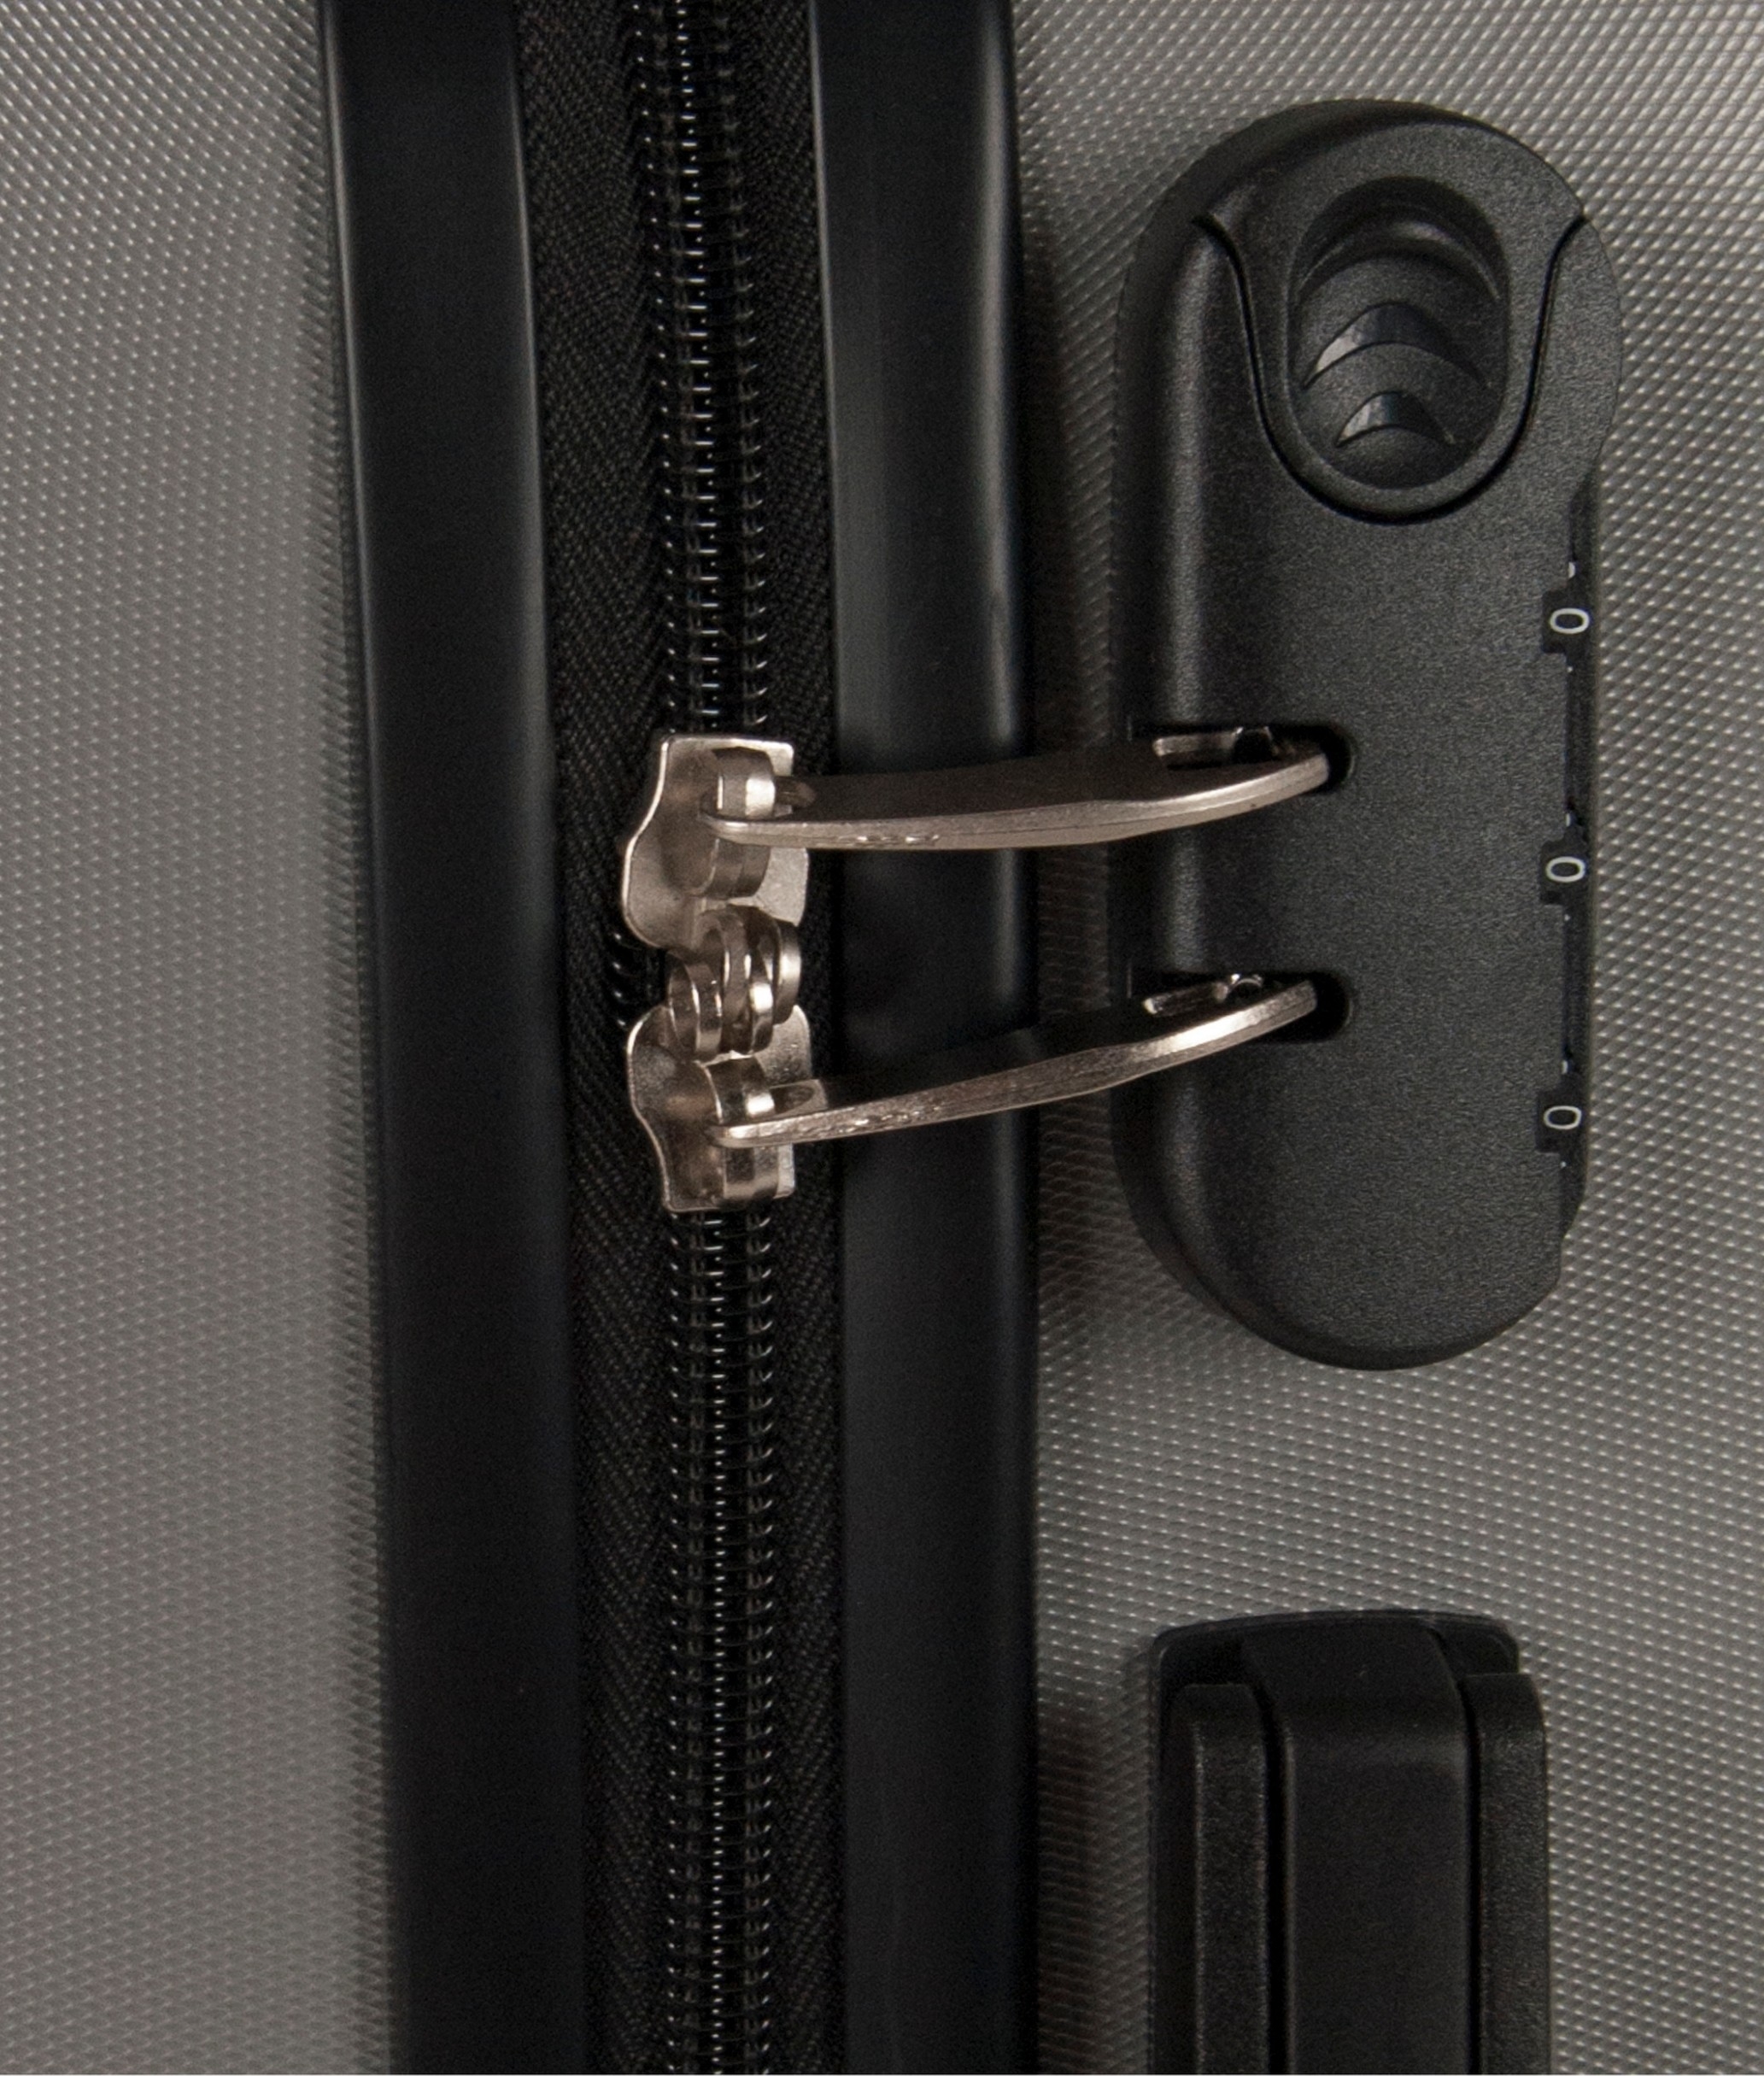 Suitcase Londre 2 Pieces - Silver